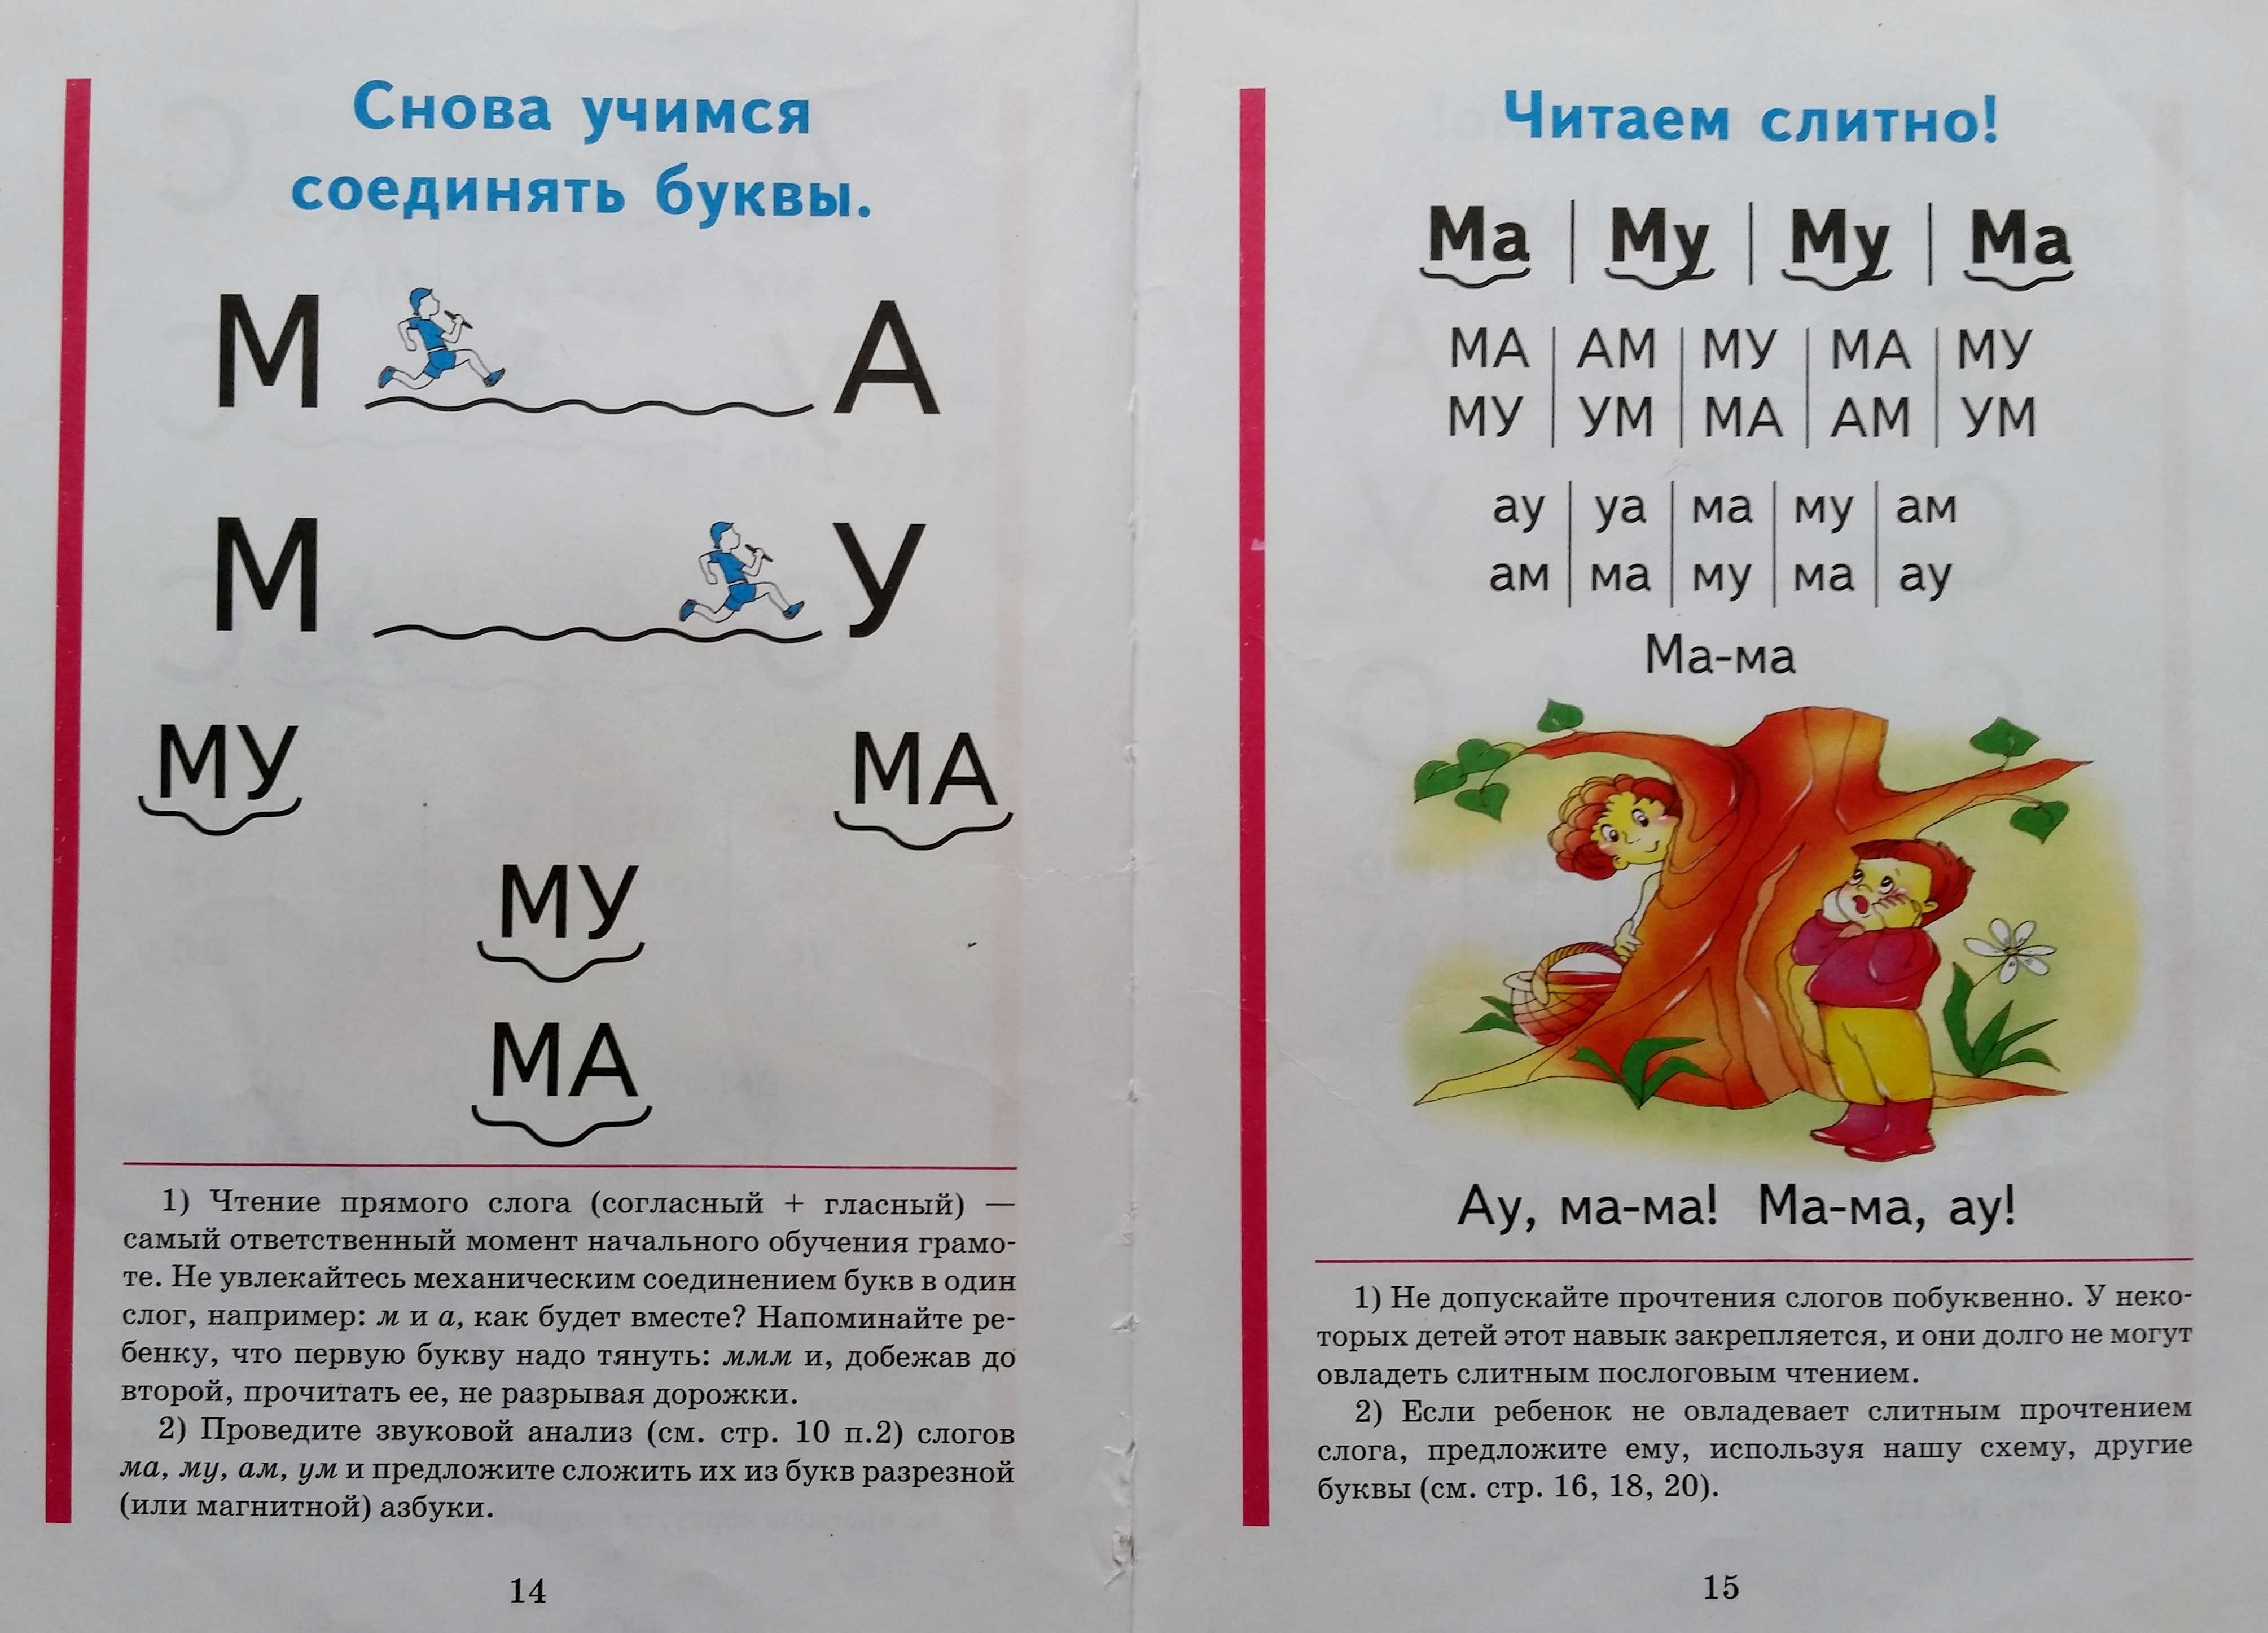 Как легко выучить алфавит с ребенком Как разбудить интерес к изучению алфавита и обучению чтению ребенка - простые способы мотивации и советы по обучению Методы изучения алфавита - какие игры и занятия помогут ненавязчиво запомнить алфавит